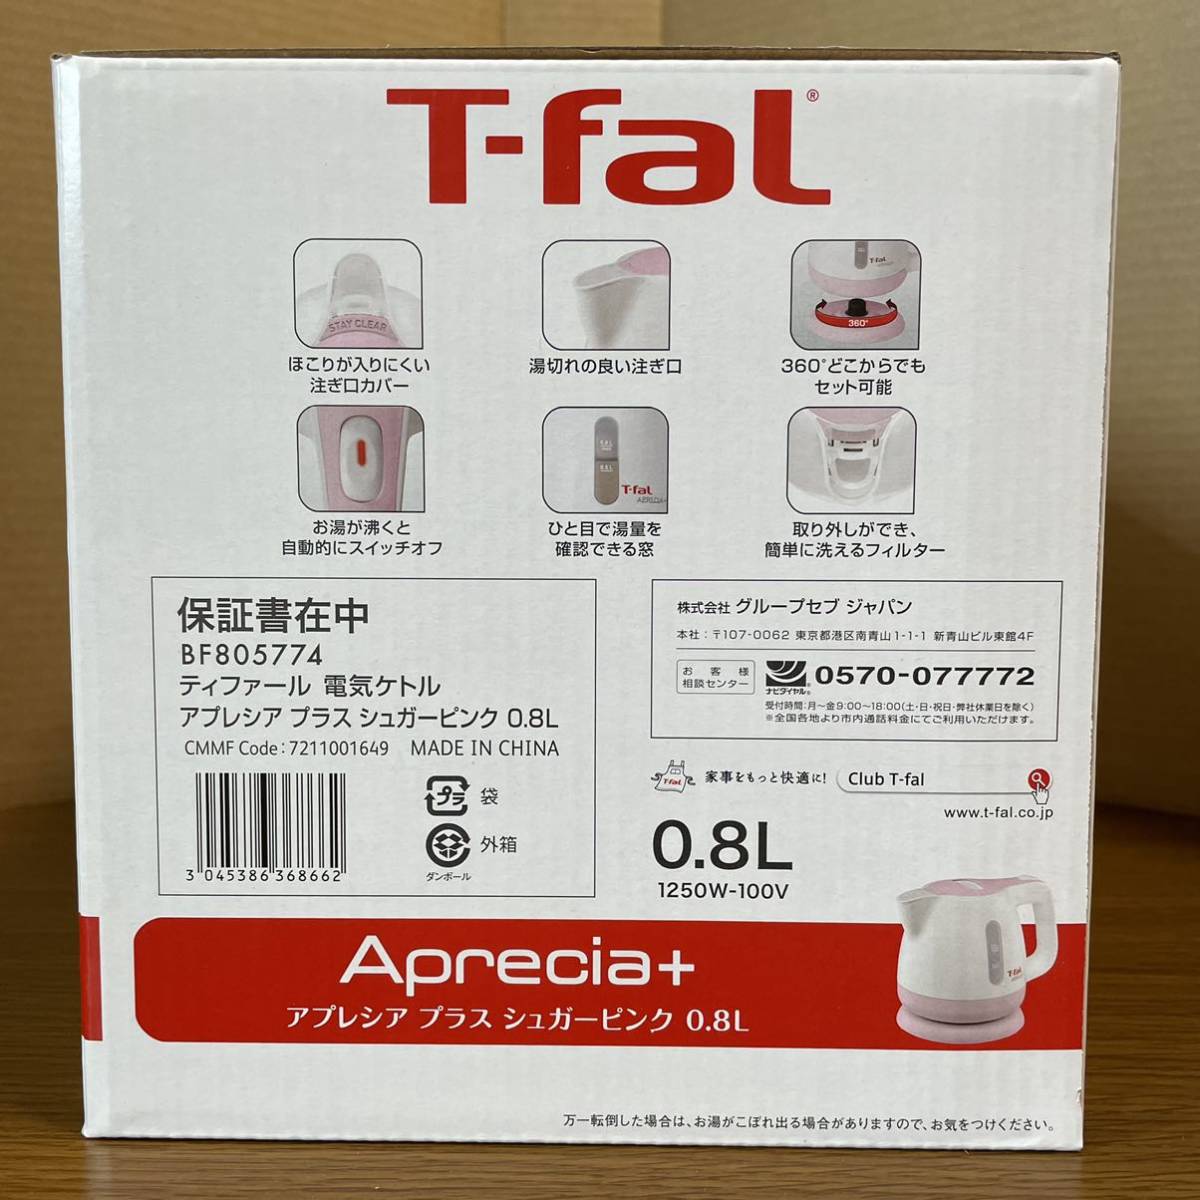 【新品未開封】T-faL ケトル 0.8L 空焚防止自動電源OFF機能付き